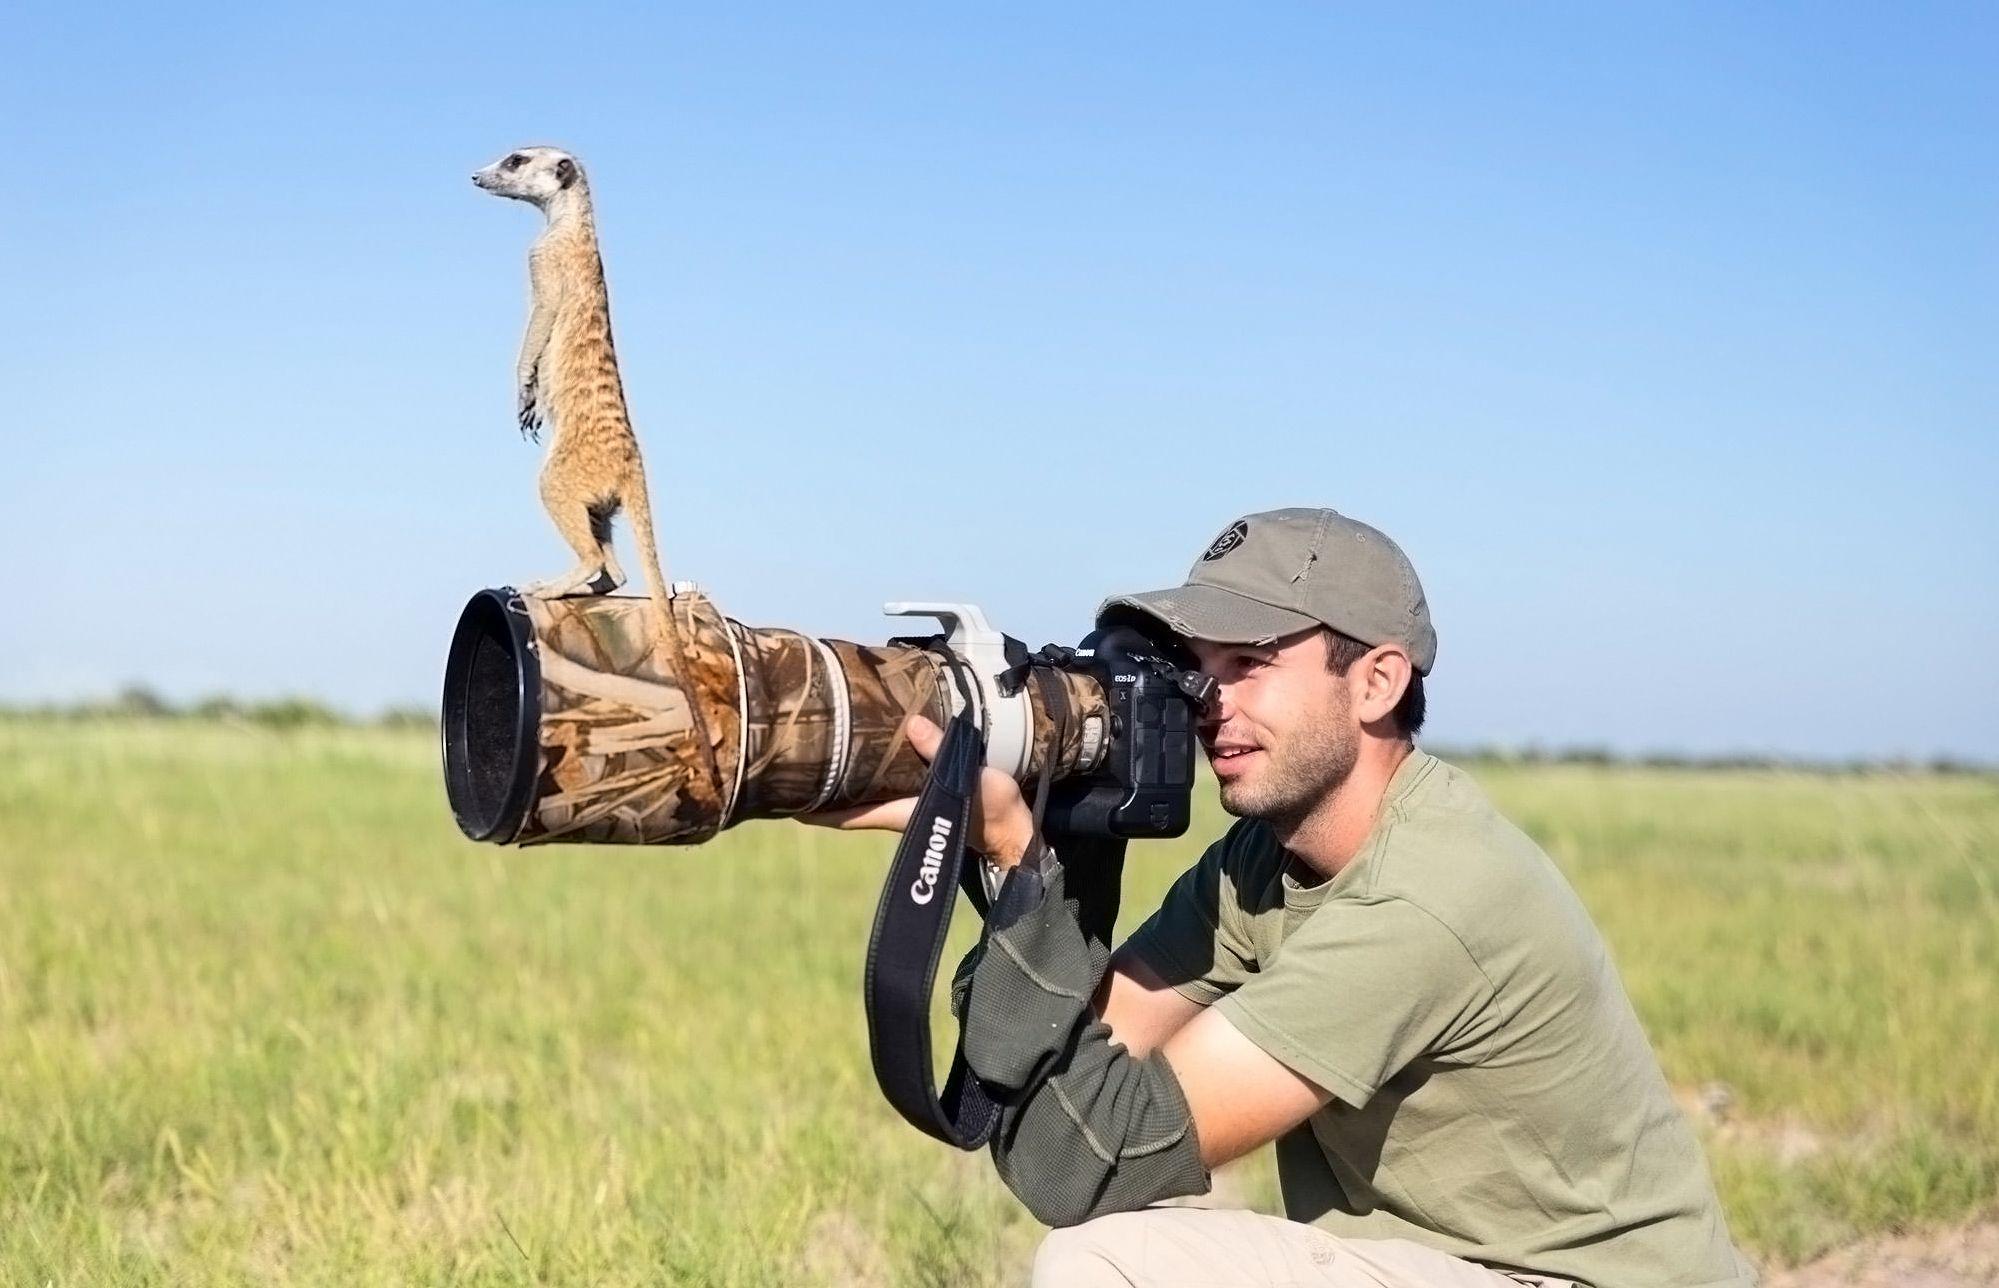 African Ferret stands up meerkats lens of photographer hd